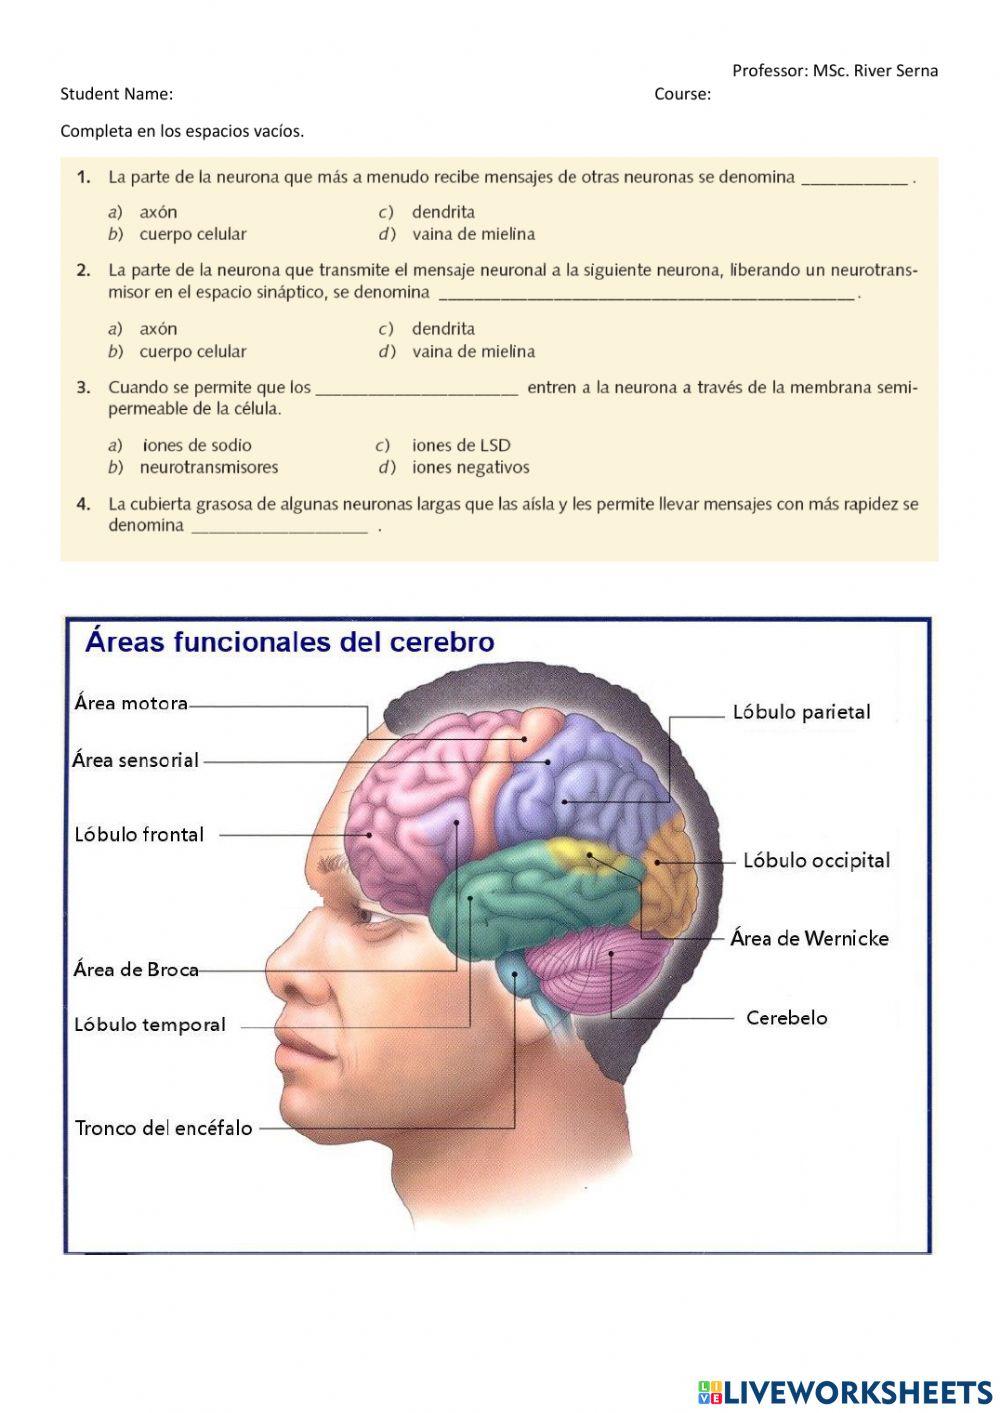 Funciones del cerebro